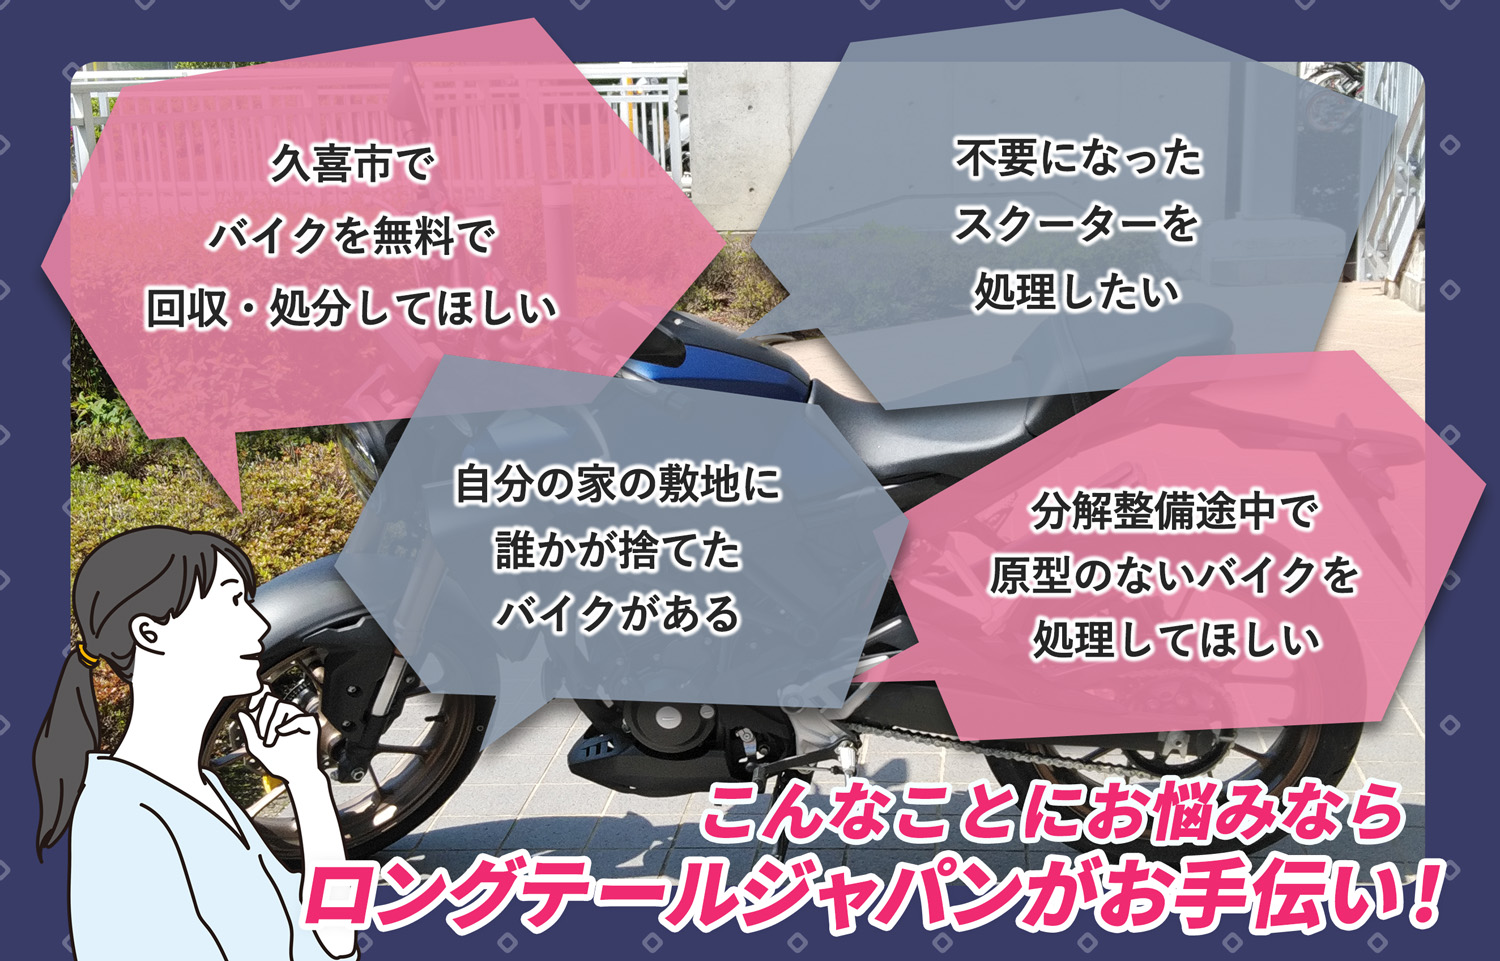 久喜市でこんなバイクの処分にお困りでしたらバイク無料回収処分隊がお手伝いいたします。